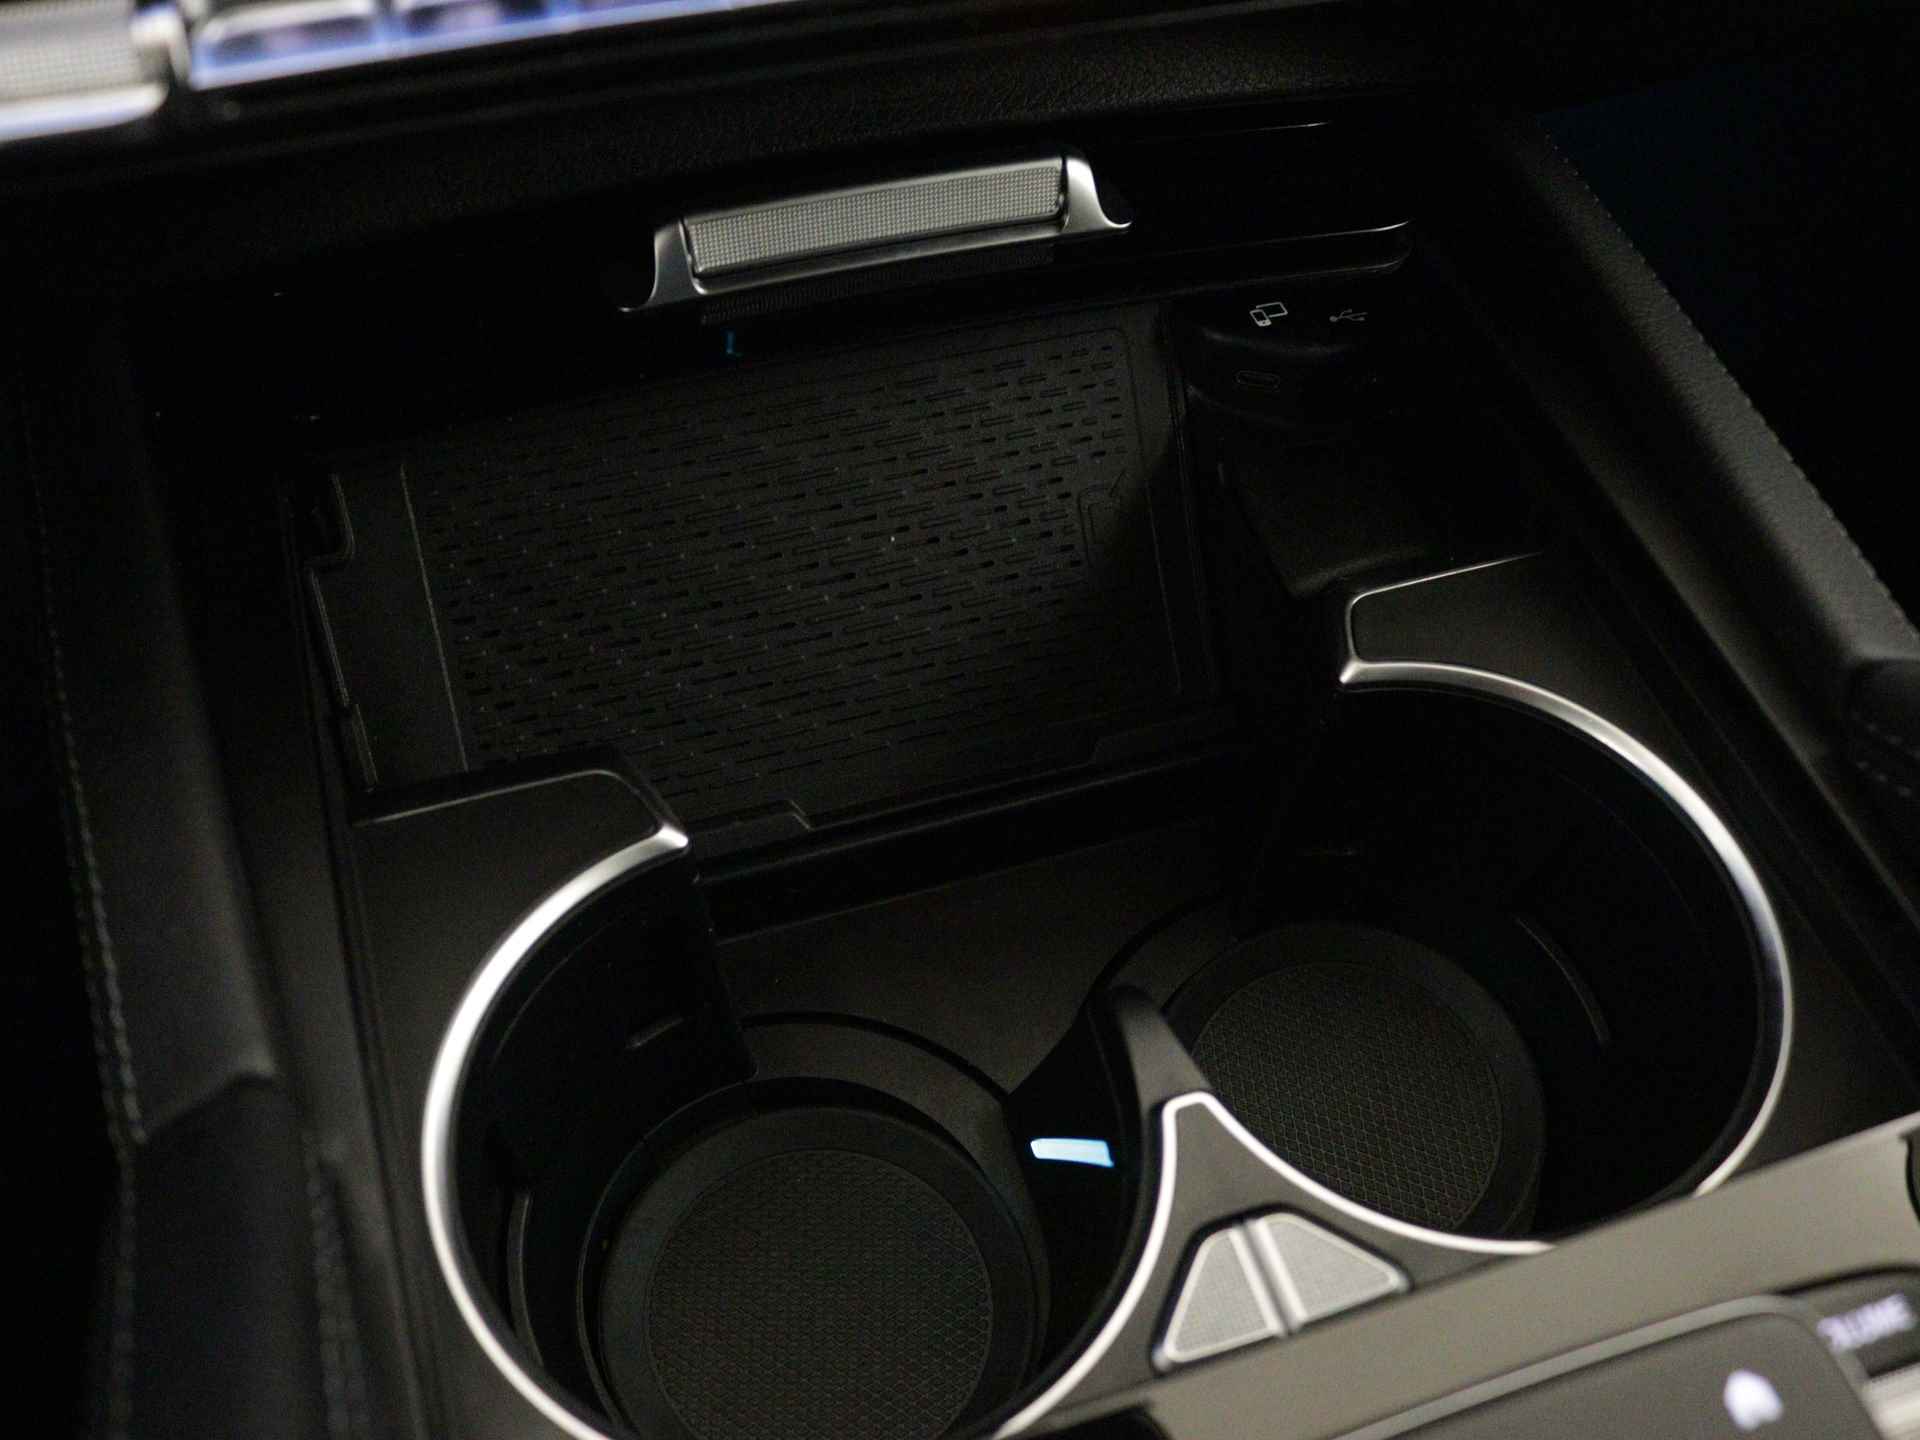 Mercedes-Benz GLE 350 e 4-MATIC AMG Nightpakket Limited 5 spaaks lichtmetalen velgen | Trekhaak | Airmatic | Treeplanken | Alarm klasse 3 |  Augmented Reality | sfeerverlichting | DAB | Parking support | inclusief 24 maanden MB Certified garantie voor europa - 35/45